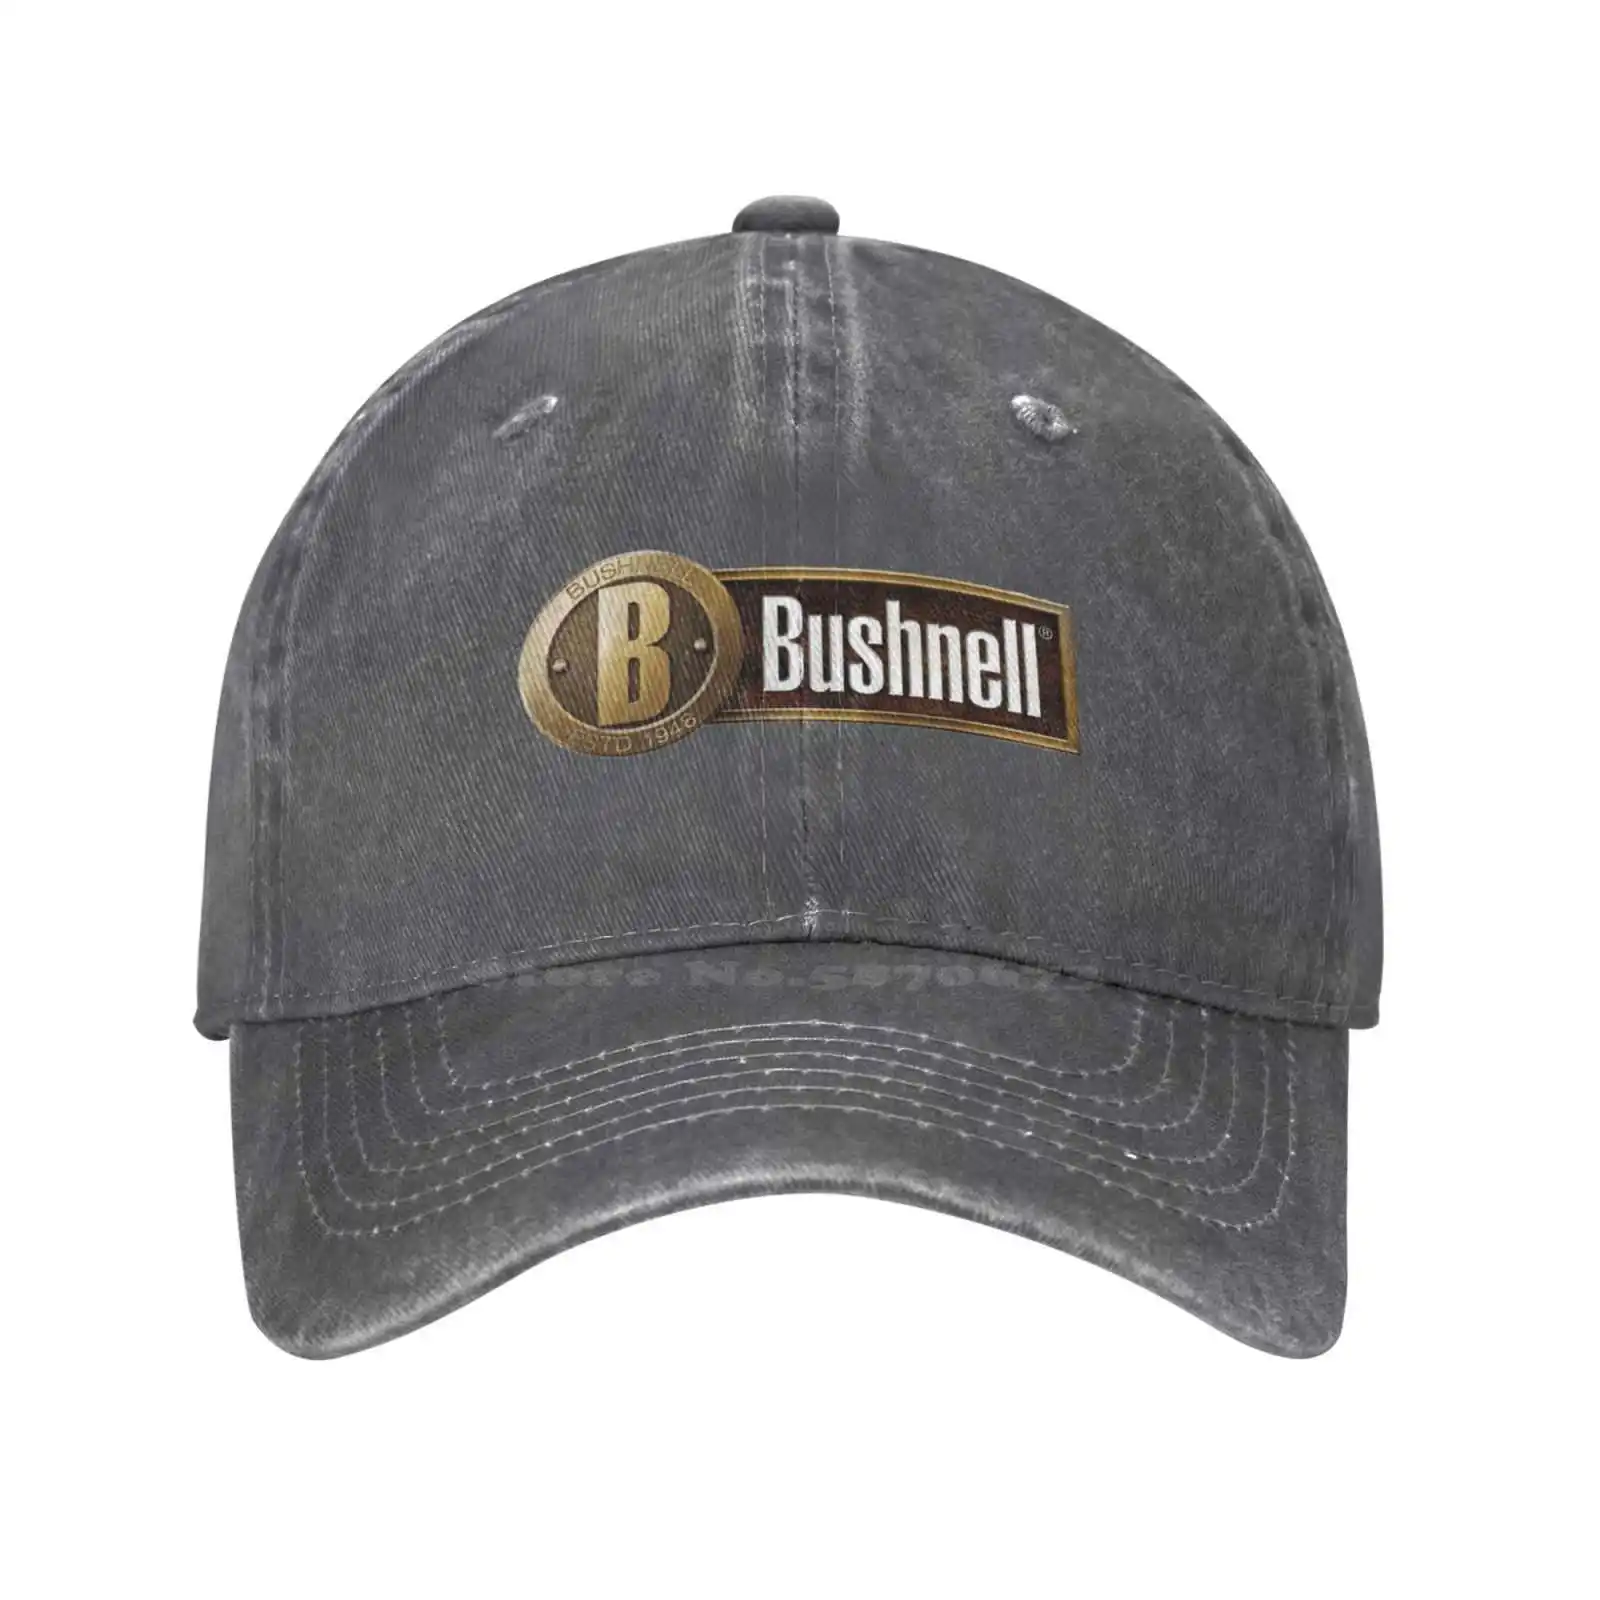 

Повседневная джинсовая бейсбольная кепка с принтом логотипа Bush NELL